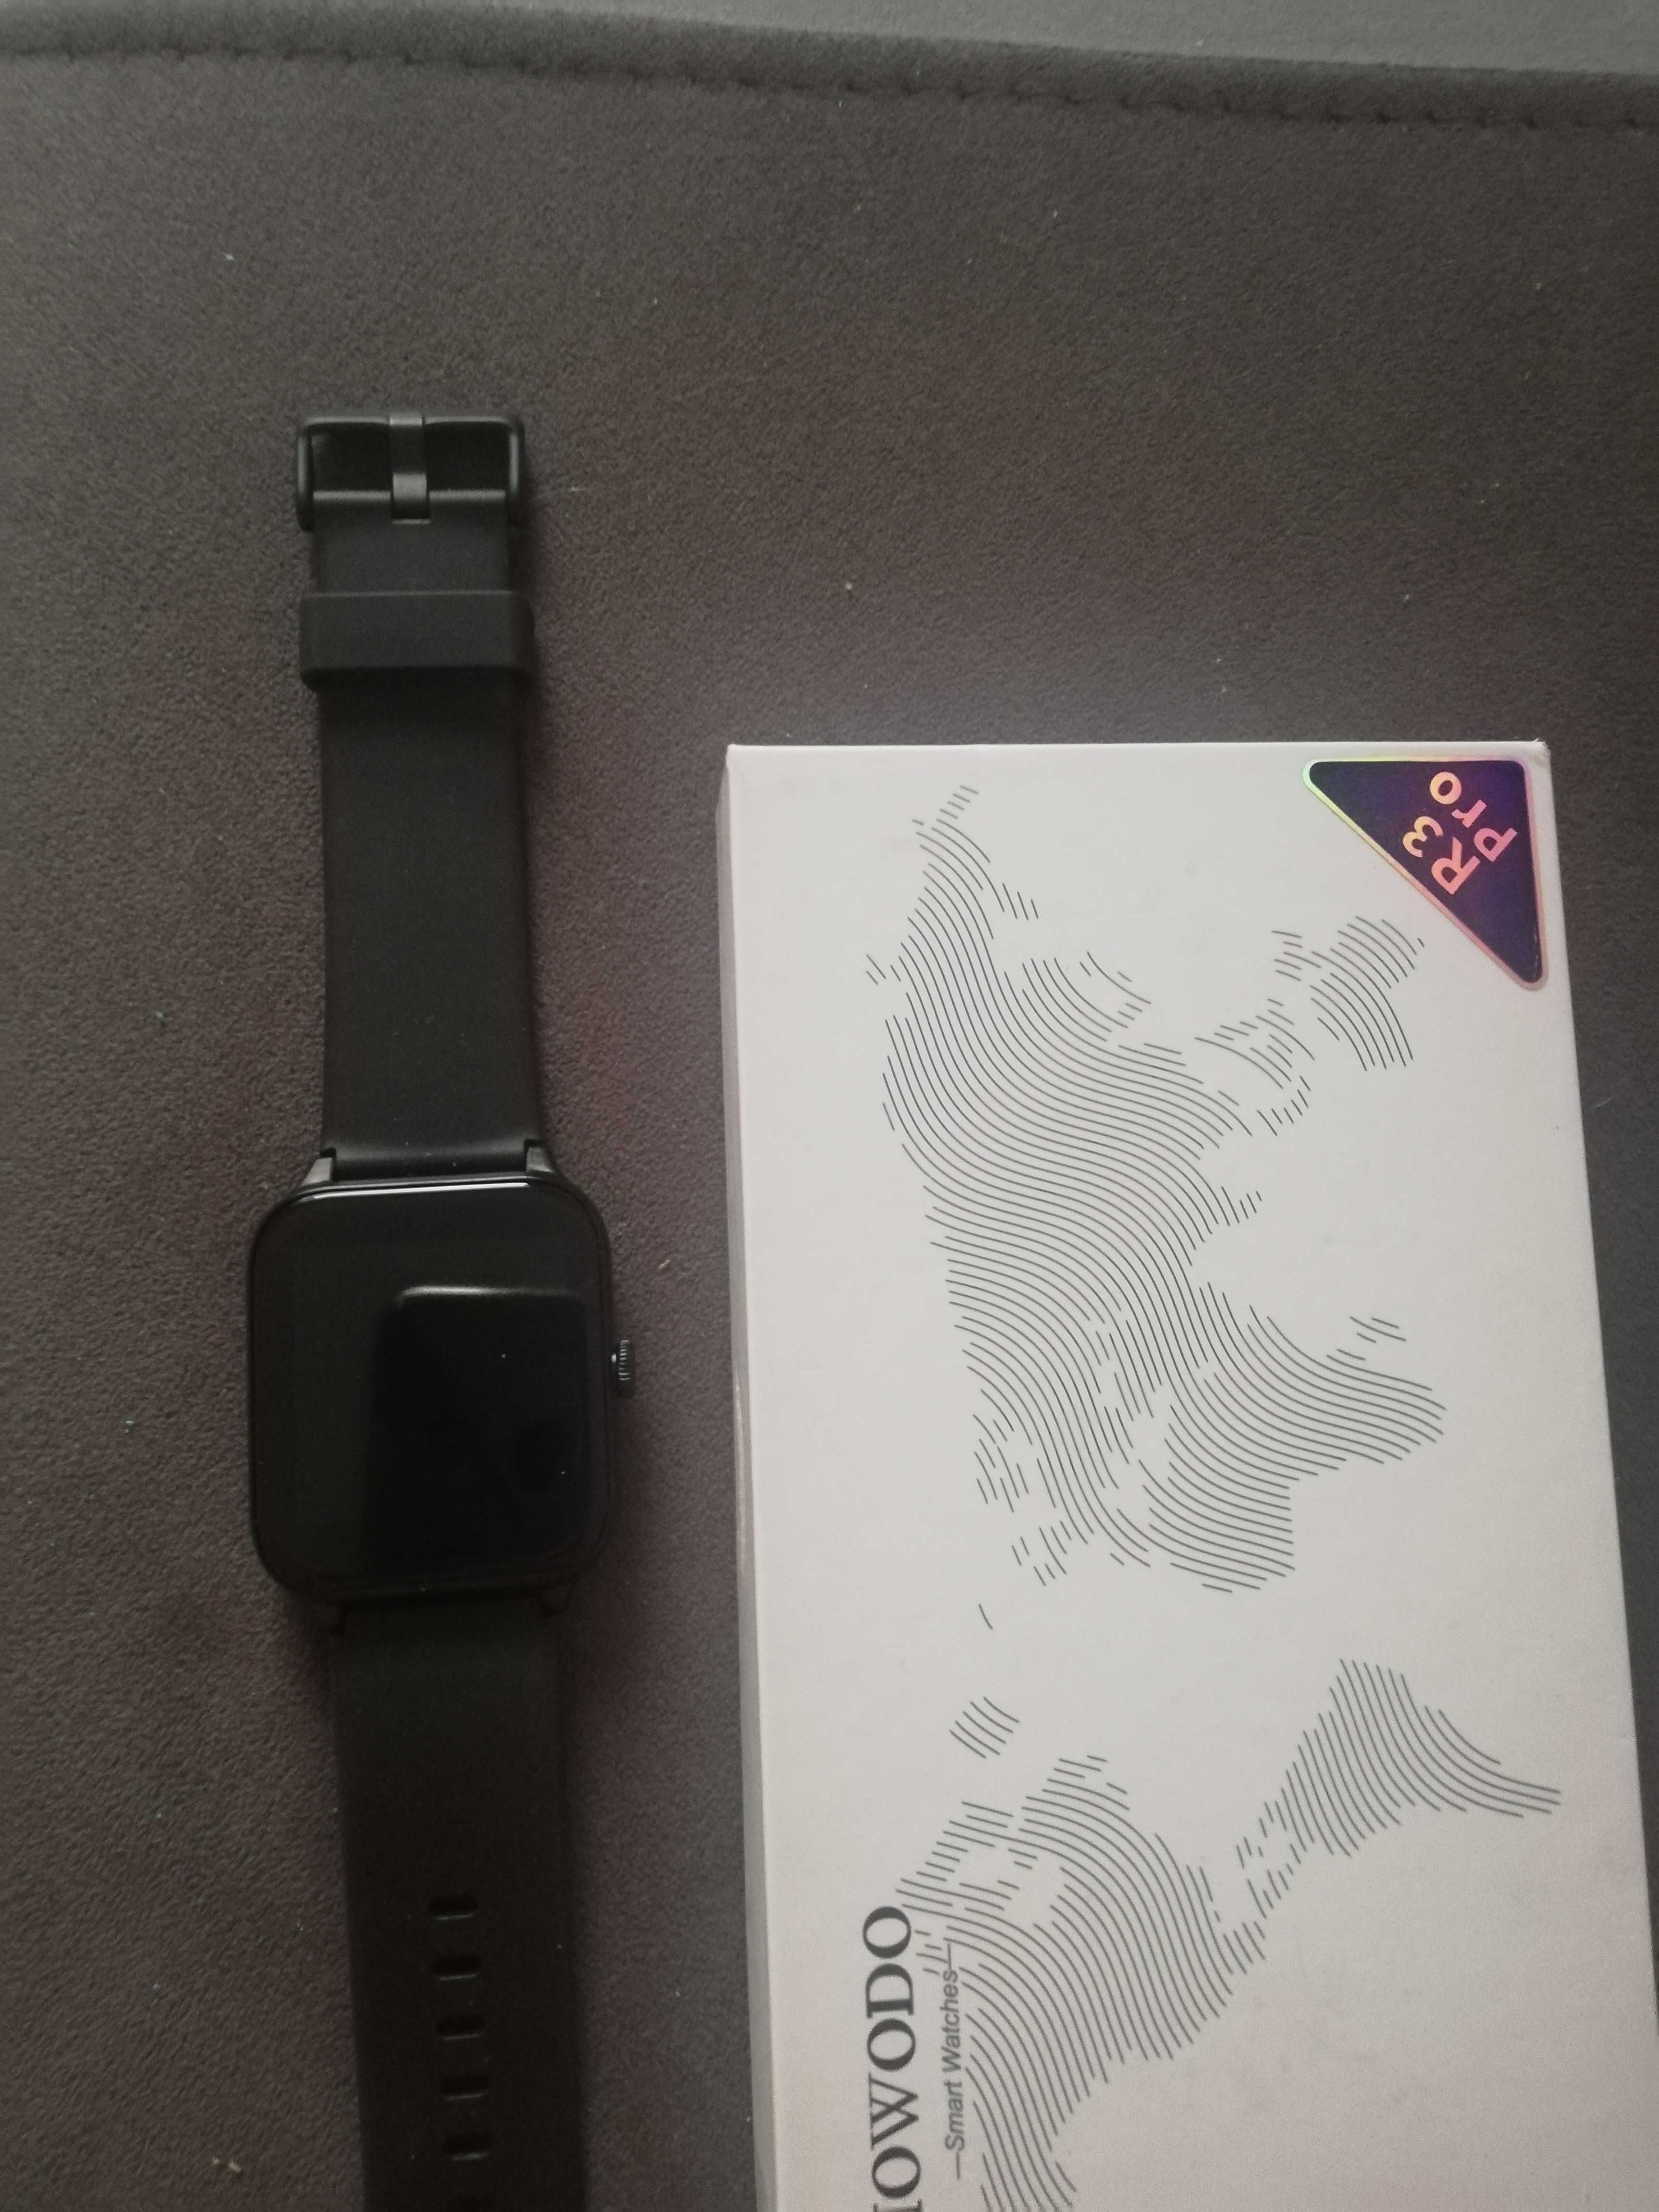 Zegarek Smartwatch IOWODO R3 Pro.